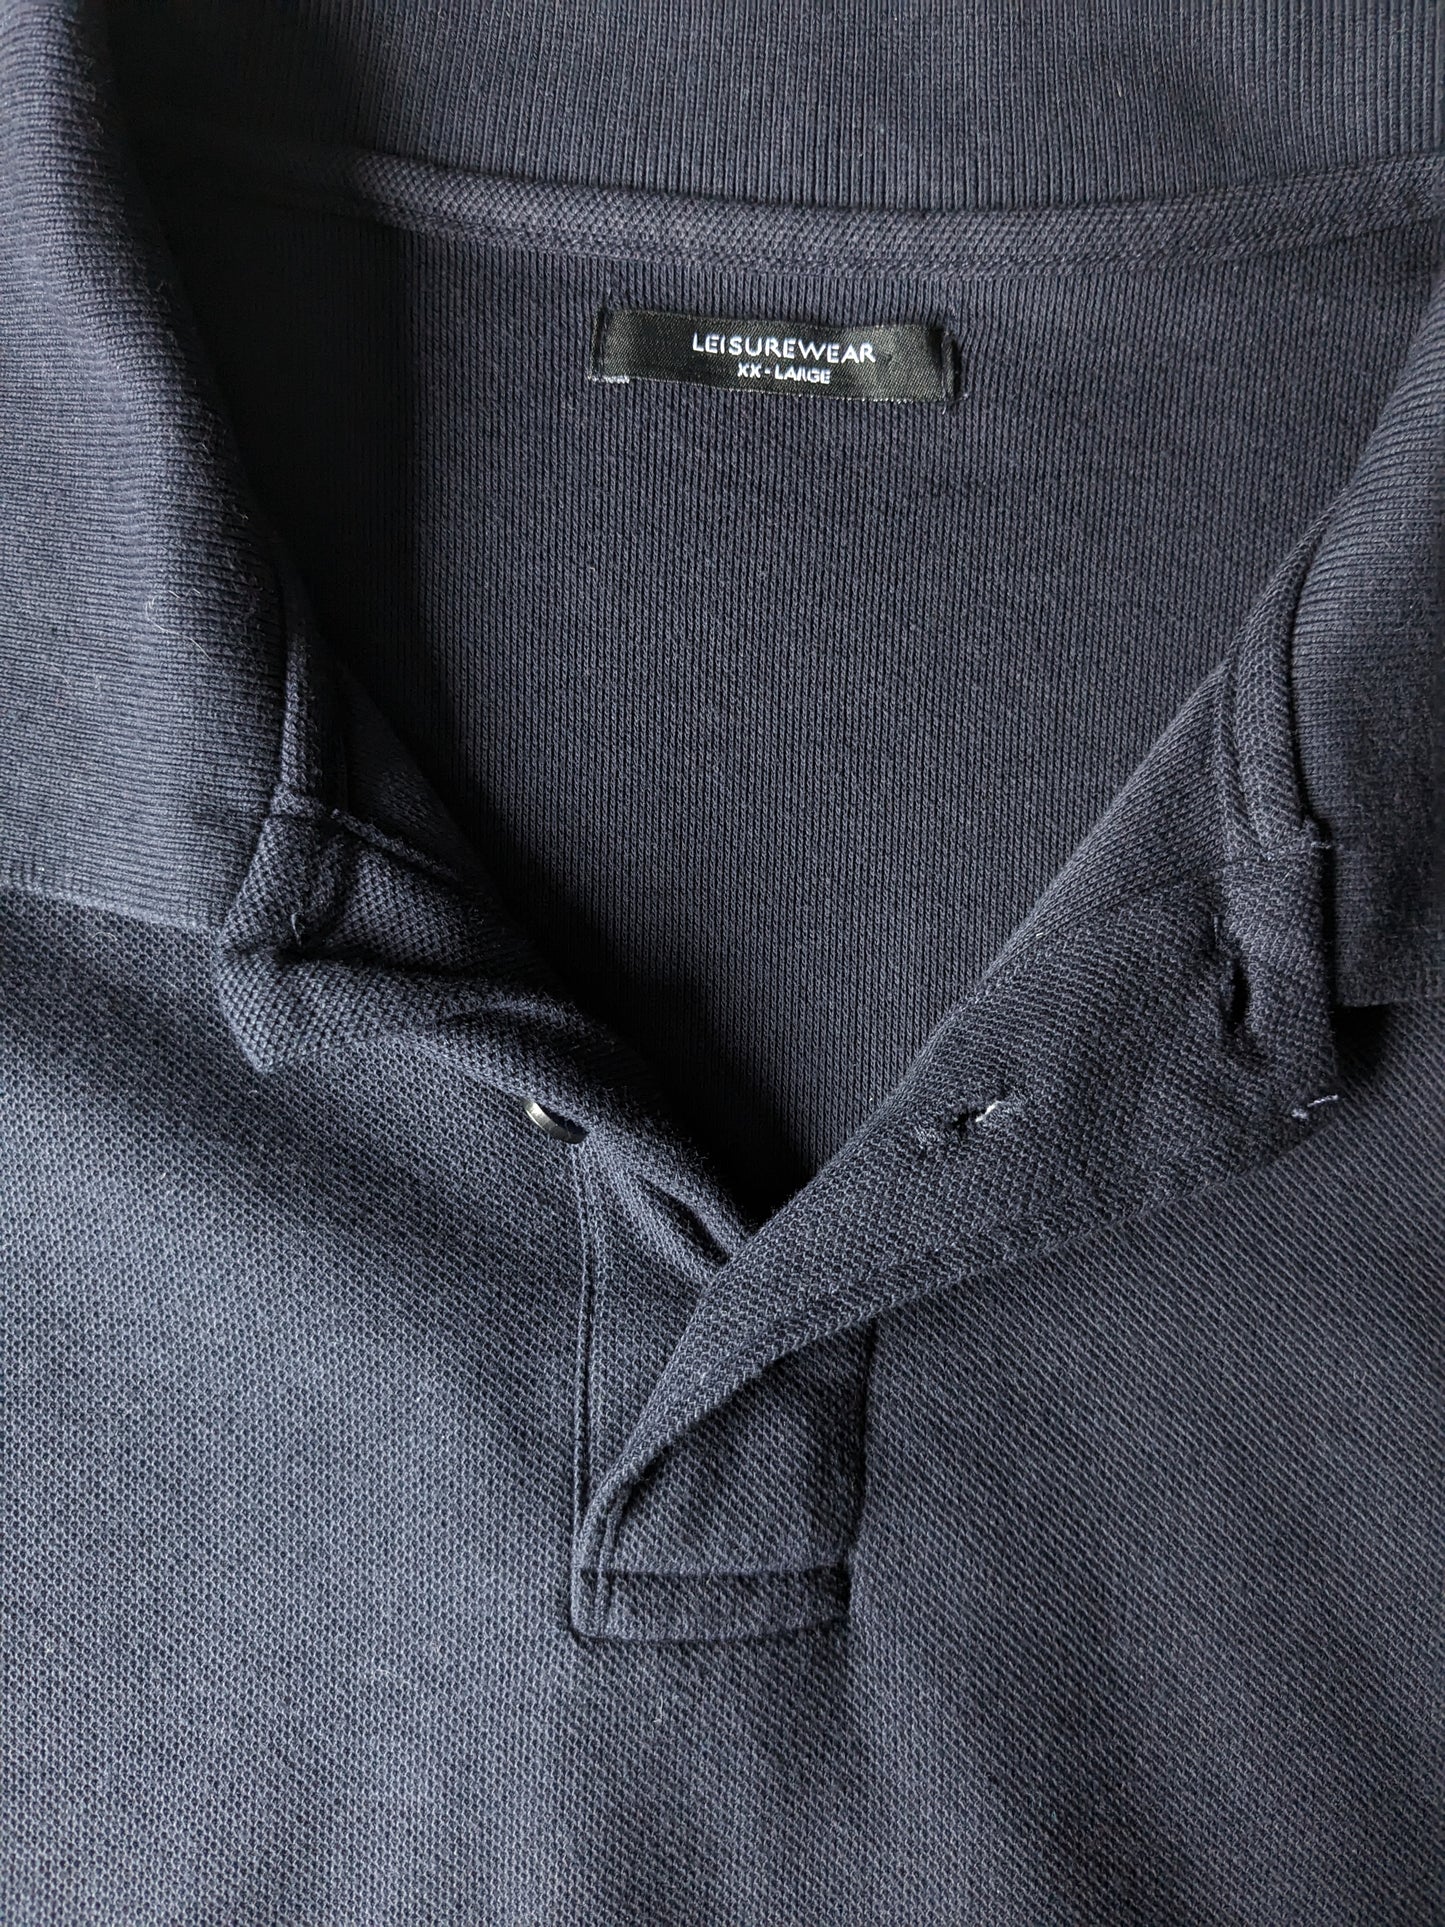 st. Bernard Leisure Wear Polo. Dark blue colored. Size 2L / XXL.